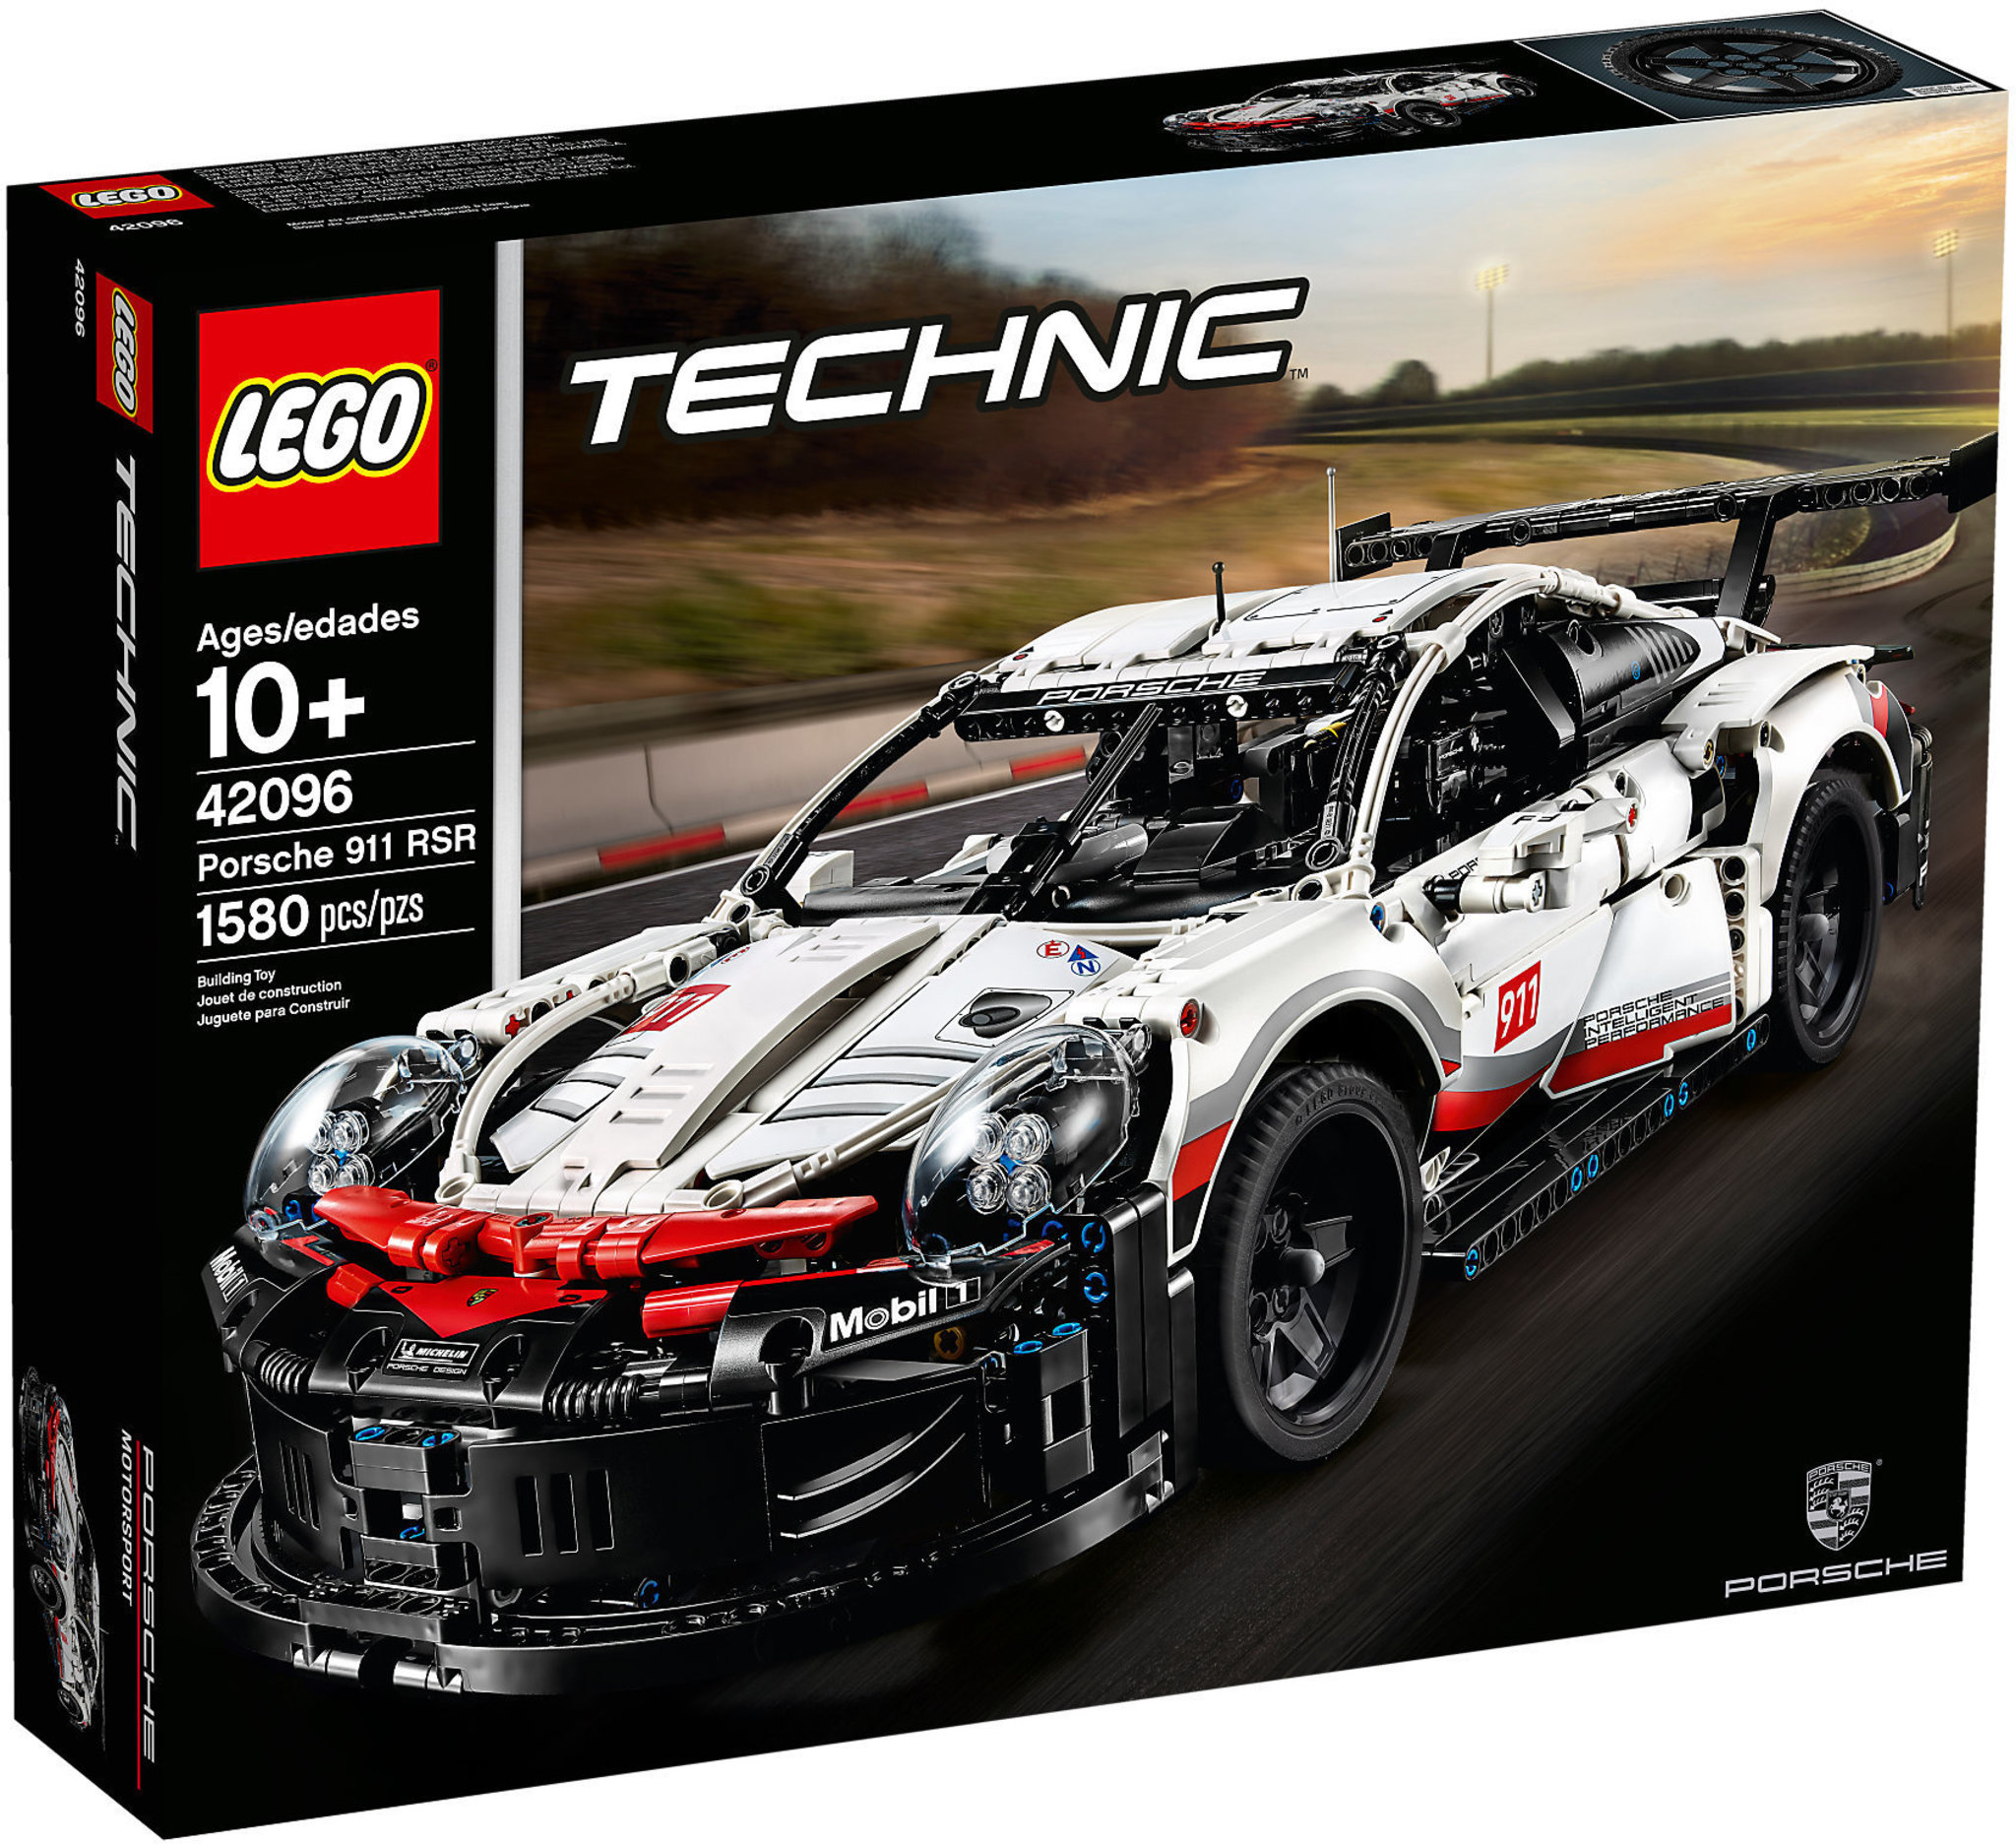 erotic binary Daddy LEGO Technic 42096 - Porsche 911 Rsr | Mattonito